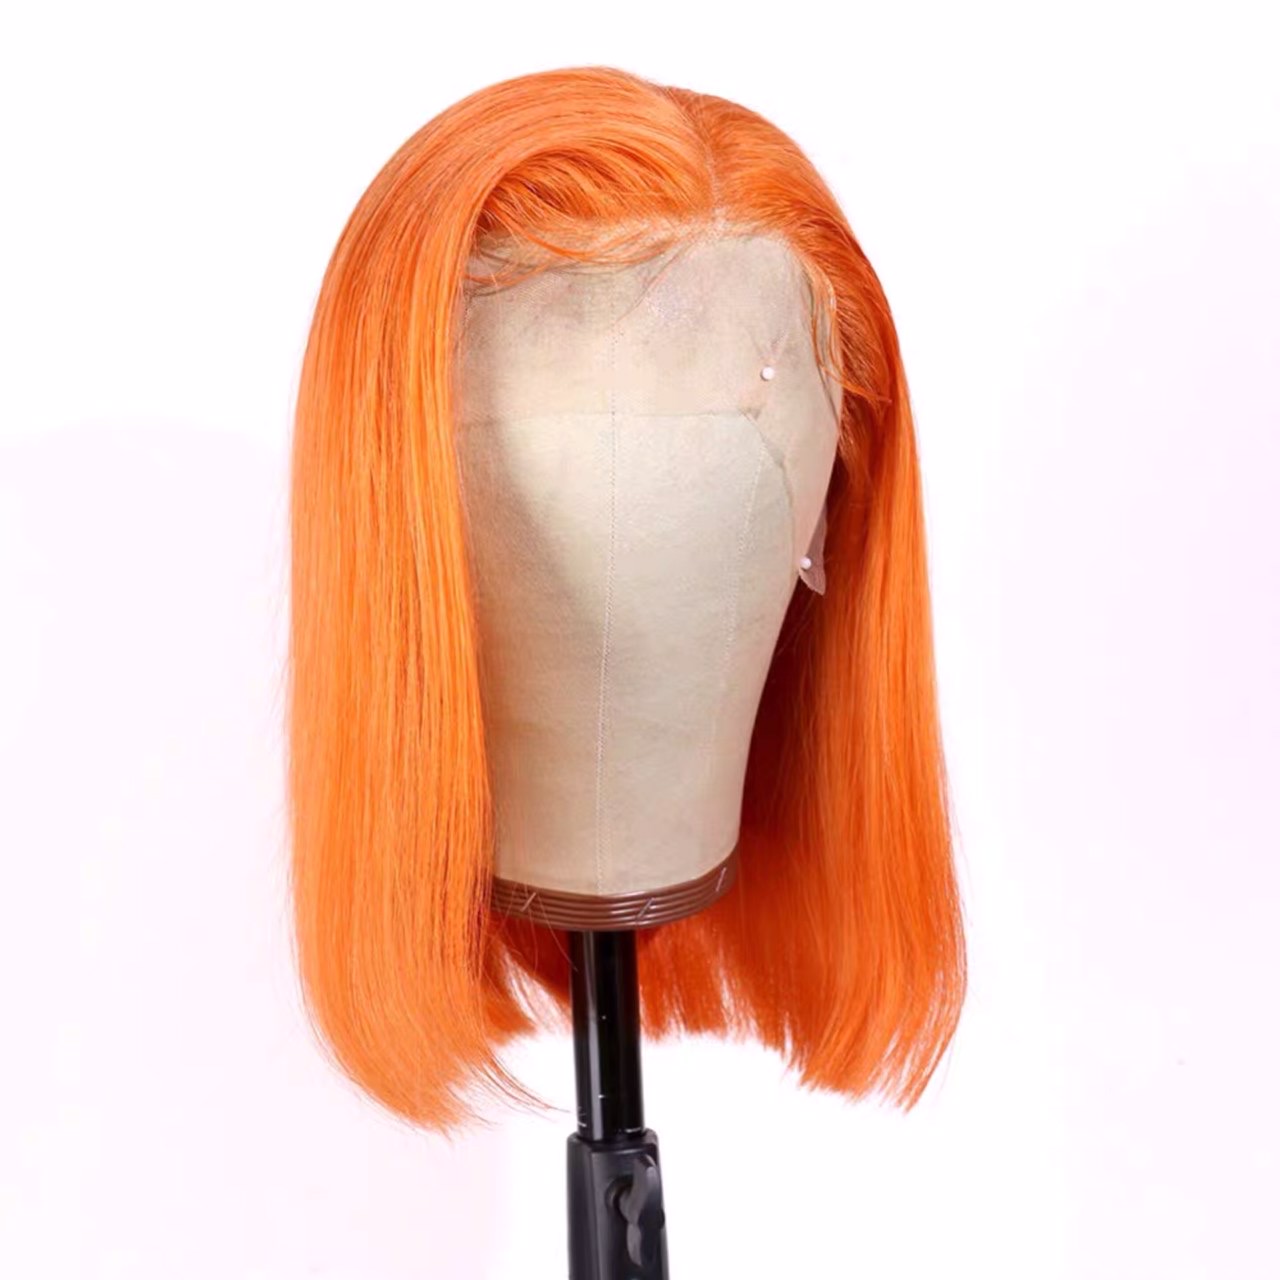 Bob Wig Orange Lace Front [4*4 Human Hair]Short Bob Wig:Hairstyle360